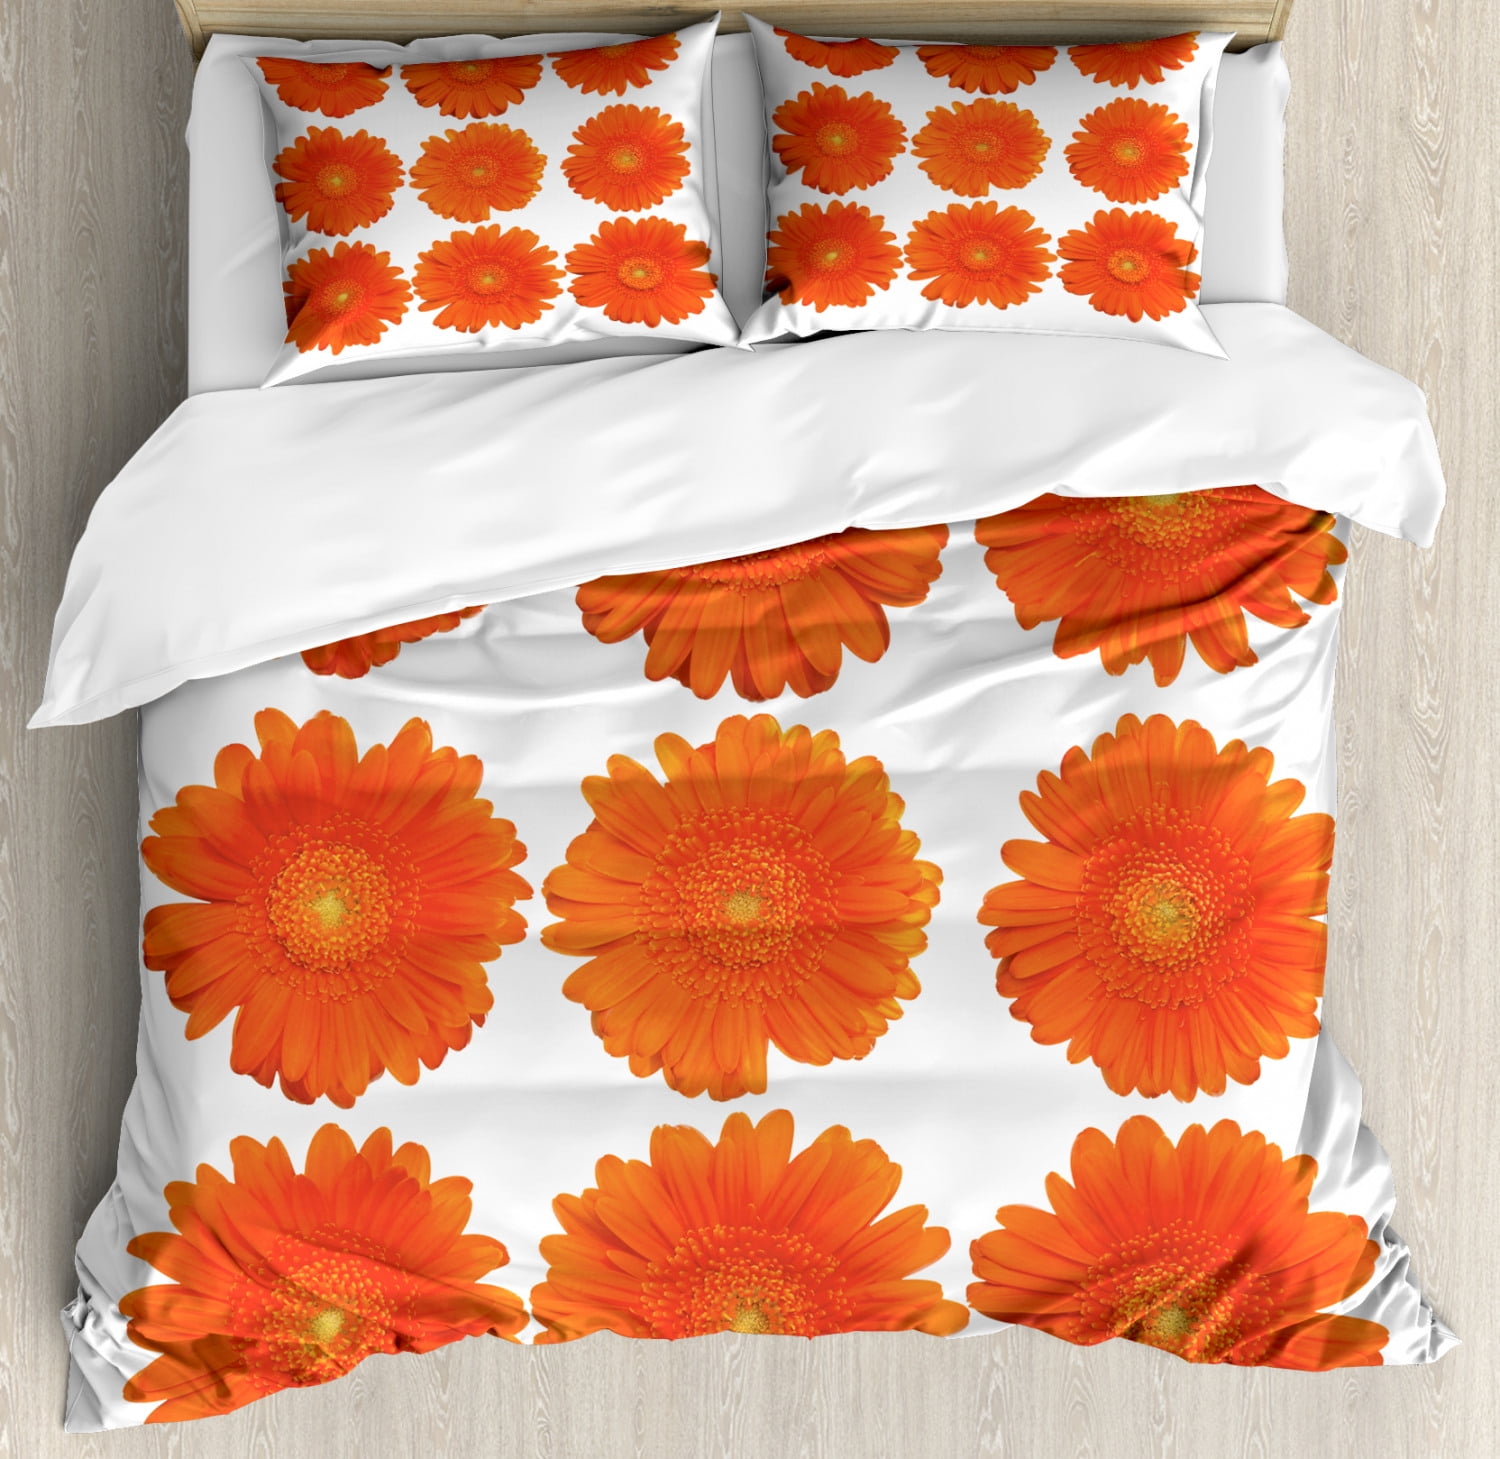 Orange King Size Duvet Cover Set Collection Of Orange Gerberas